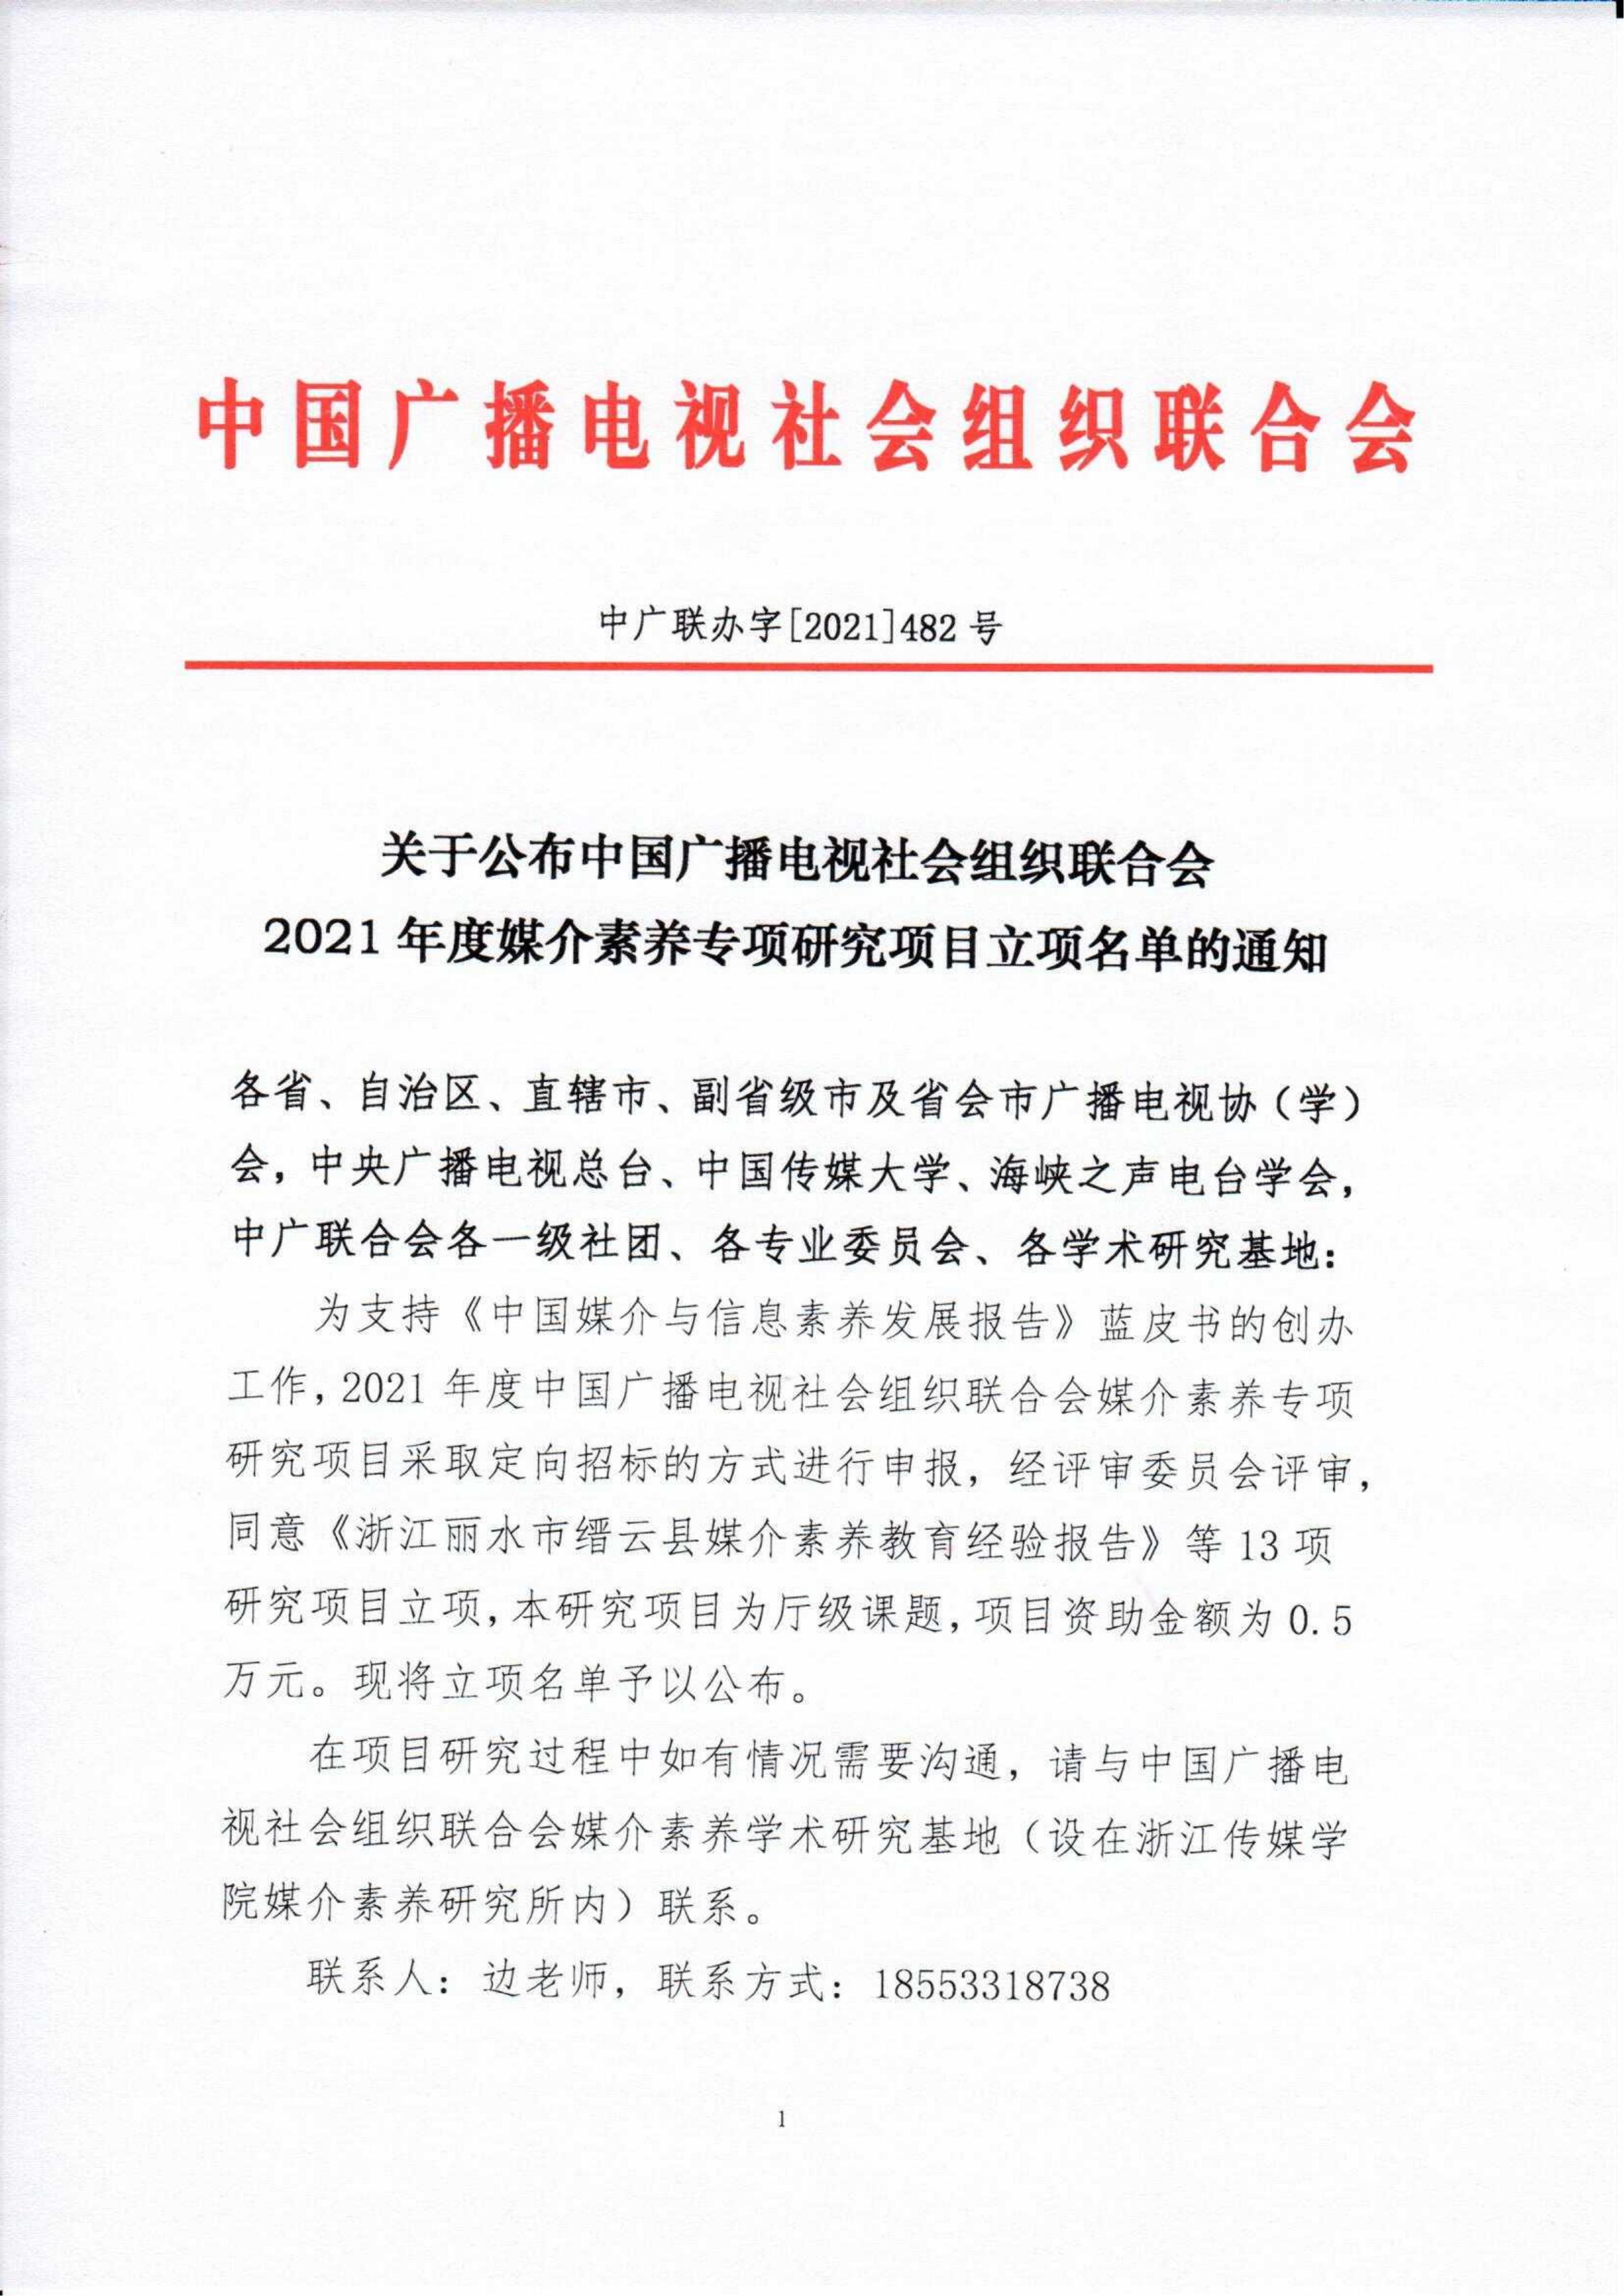 關于公布中國廣播電視社會組織聯合會2021年度媒介素養專項研究項目立項名單的通知_fororder_紅頭 媒介素養學術研究基地2021年度立項名單的通知（最終）_00